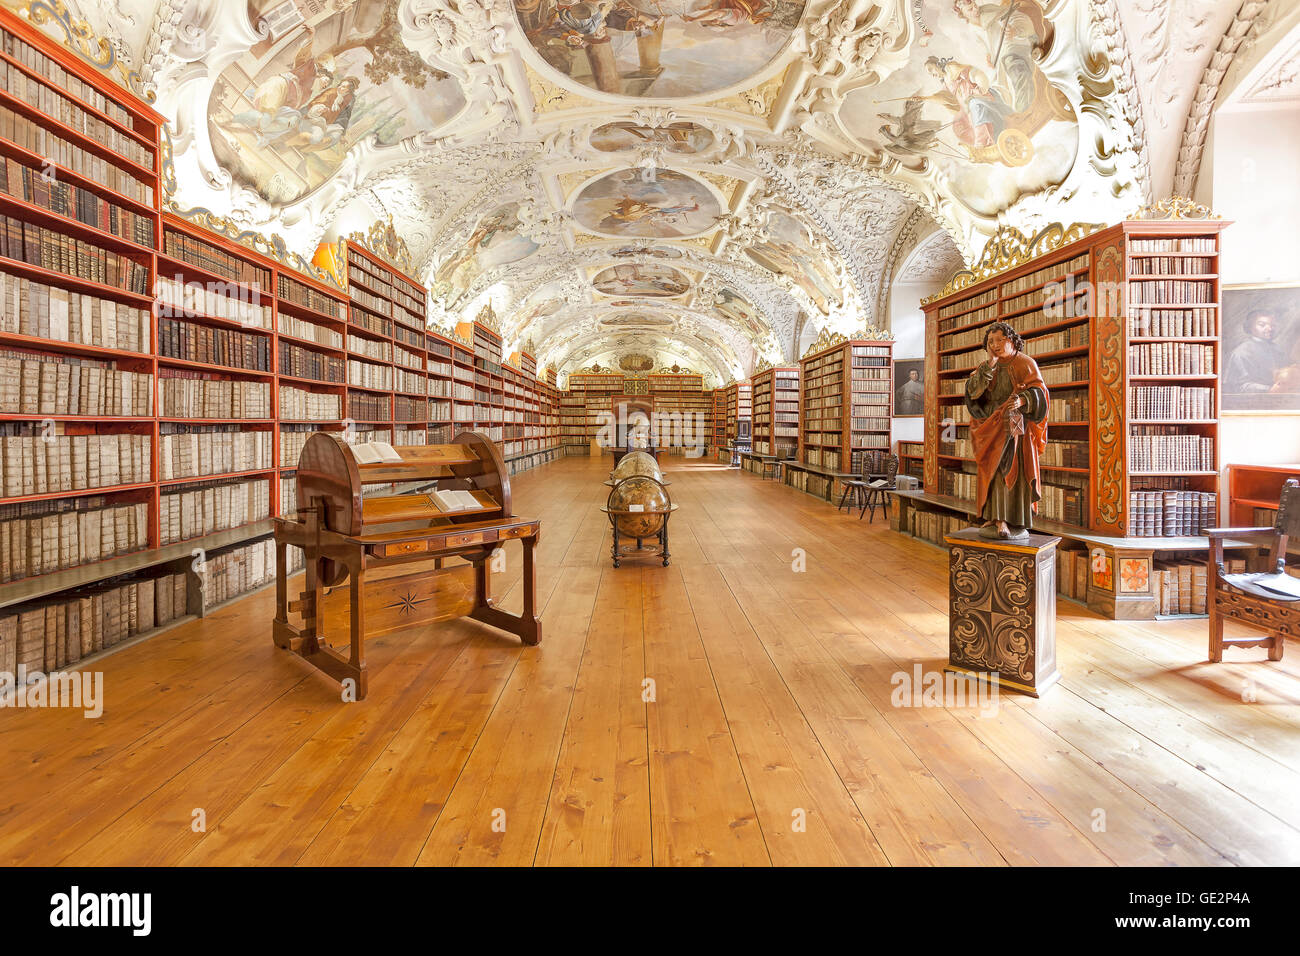 Prague, République tchèque - Le 15 juin 2014 : La salle théologique dans le monastère de Strahov à Prague, l'un des meilleurs intérieurs de la bibliothèque Banque D'Images